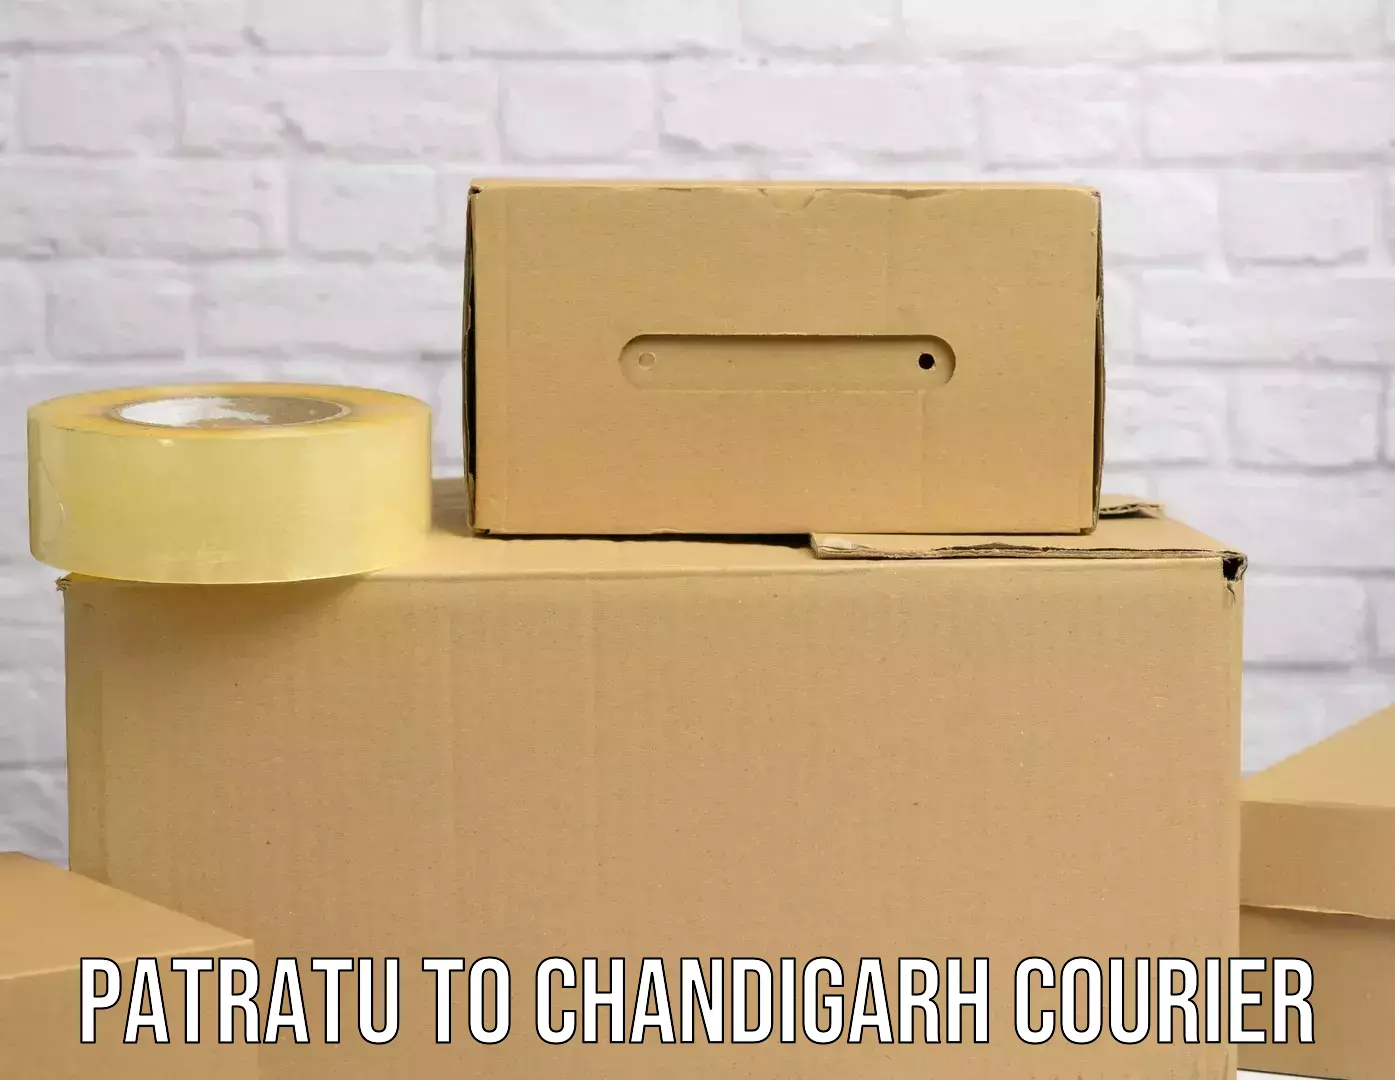 Advanced courier platforms Patratu to Chandigarh